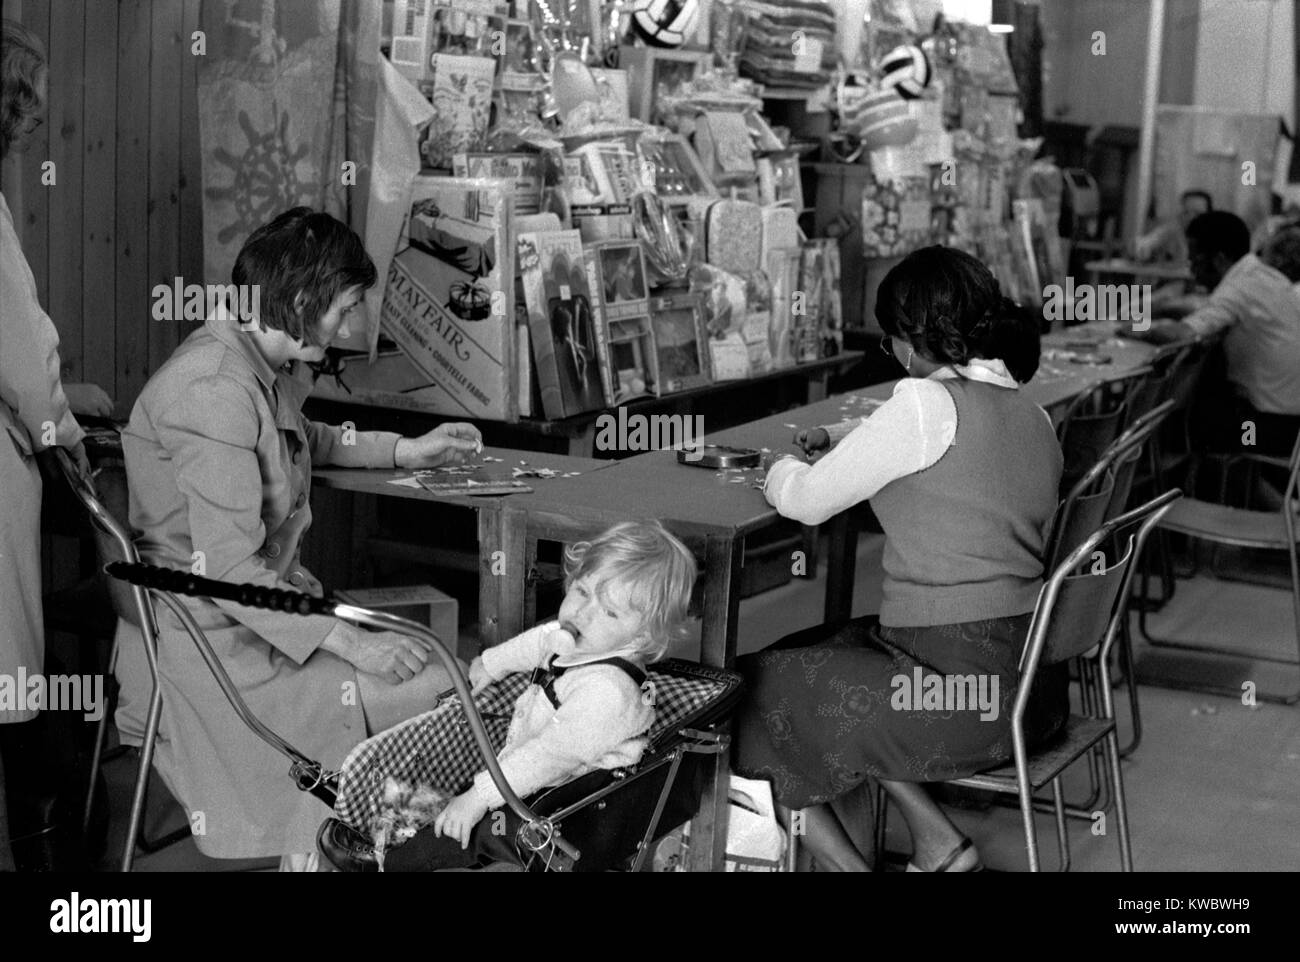 1970s Reino Unido Londres madre y niño jugando al bingo en una galería de diversión. Portobello Road, Notting Hill Inglaterra 1975 HOMER SYKES Foto de stock